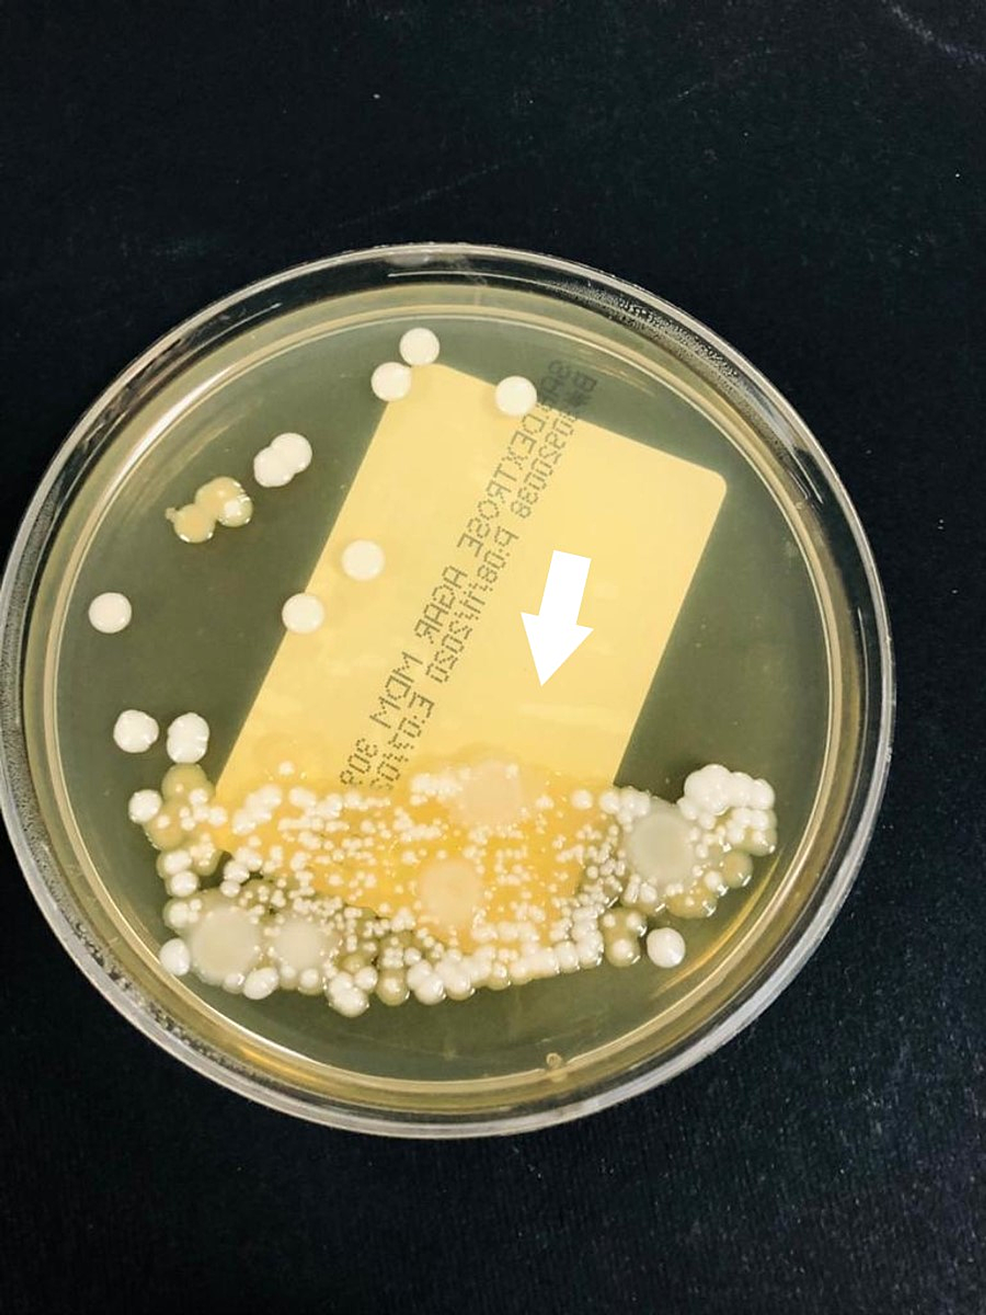 Candida-auris-colonies-growing-on-Saboraux-dextrose-agar